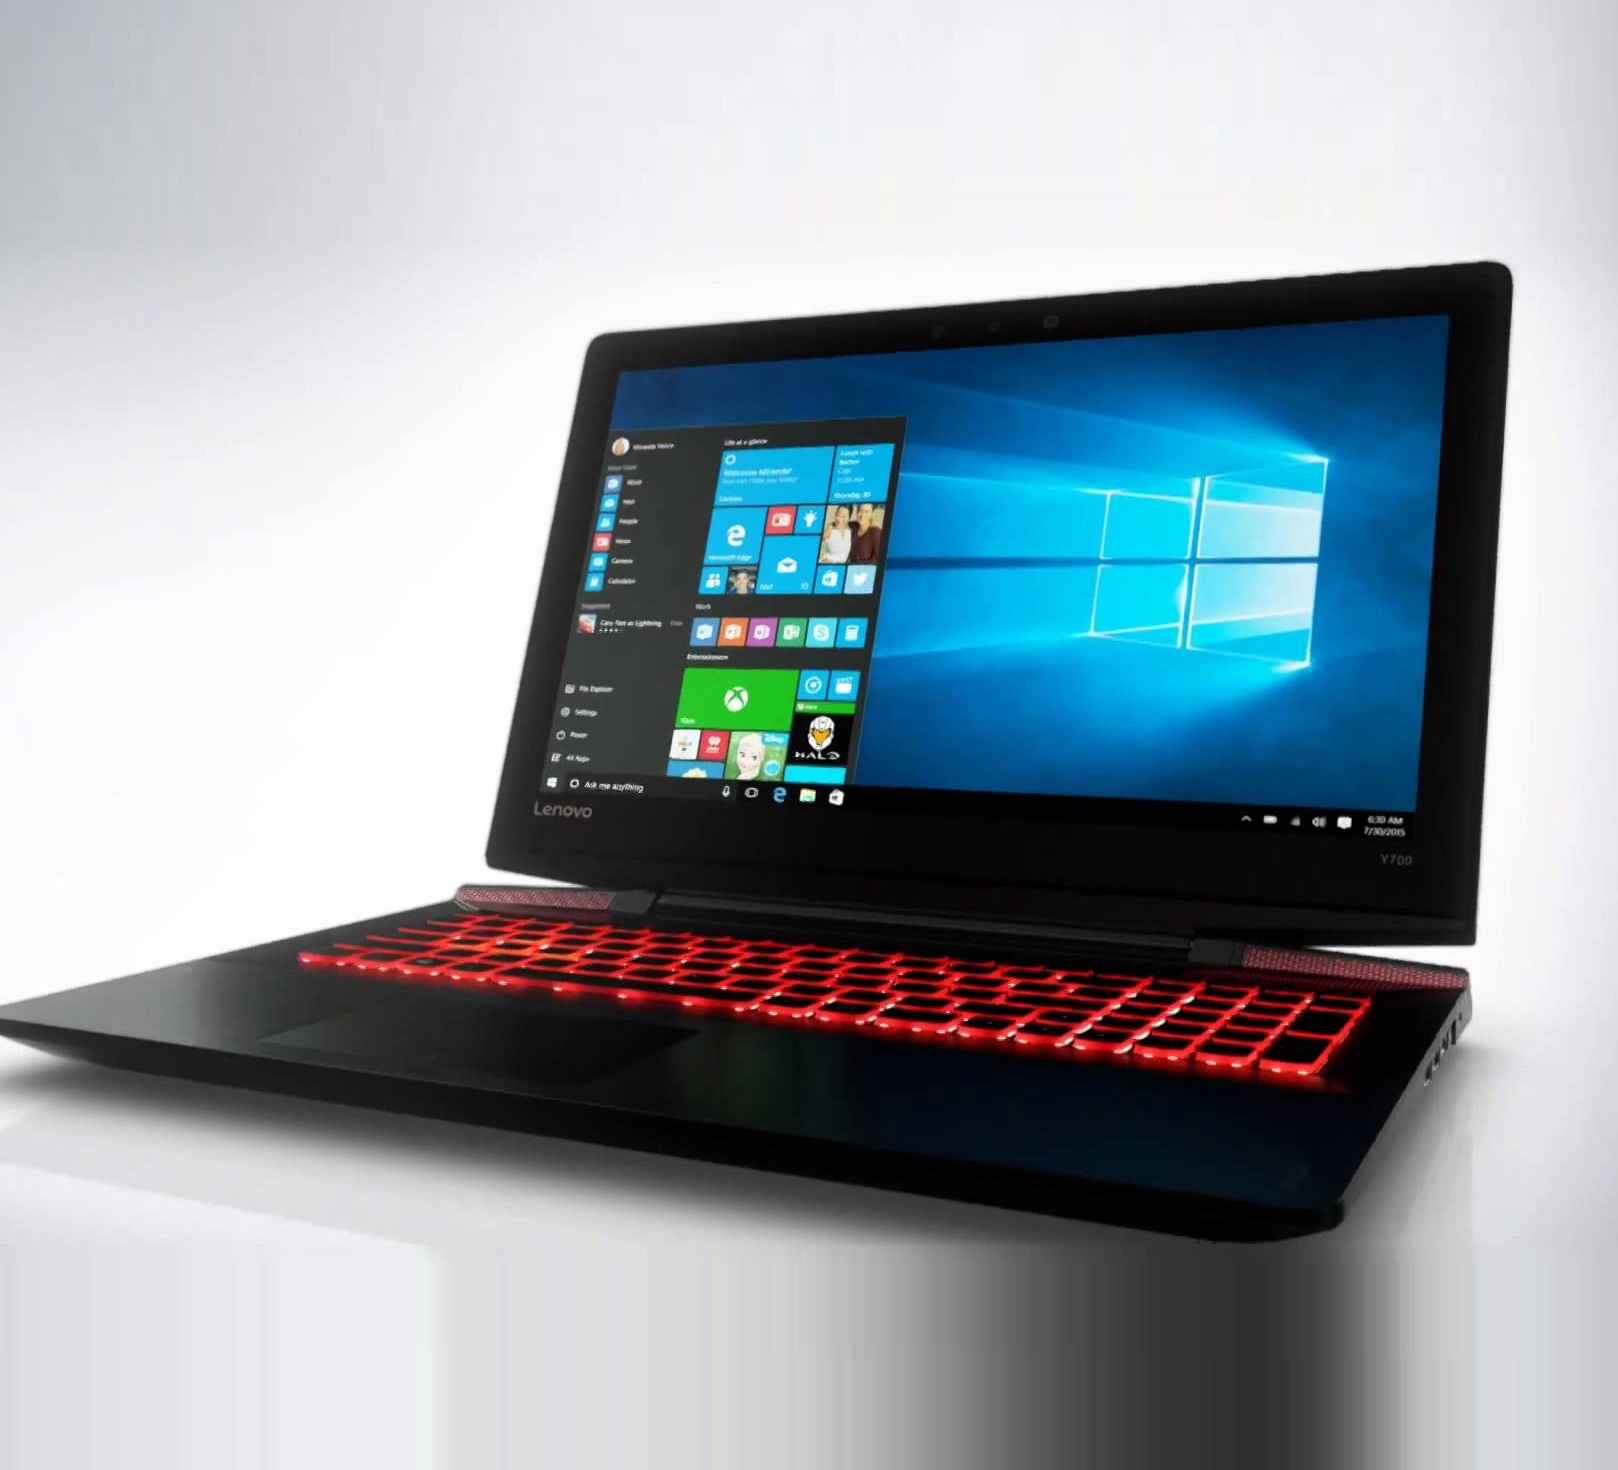 Lenovo Y700 е един от най-изгодните геймърски лаптопи на пазара